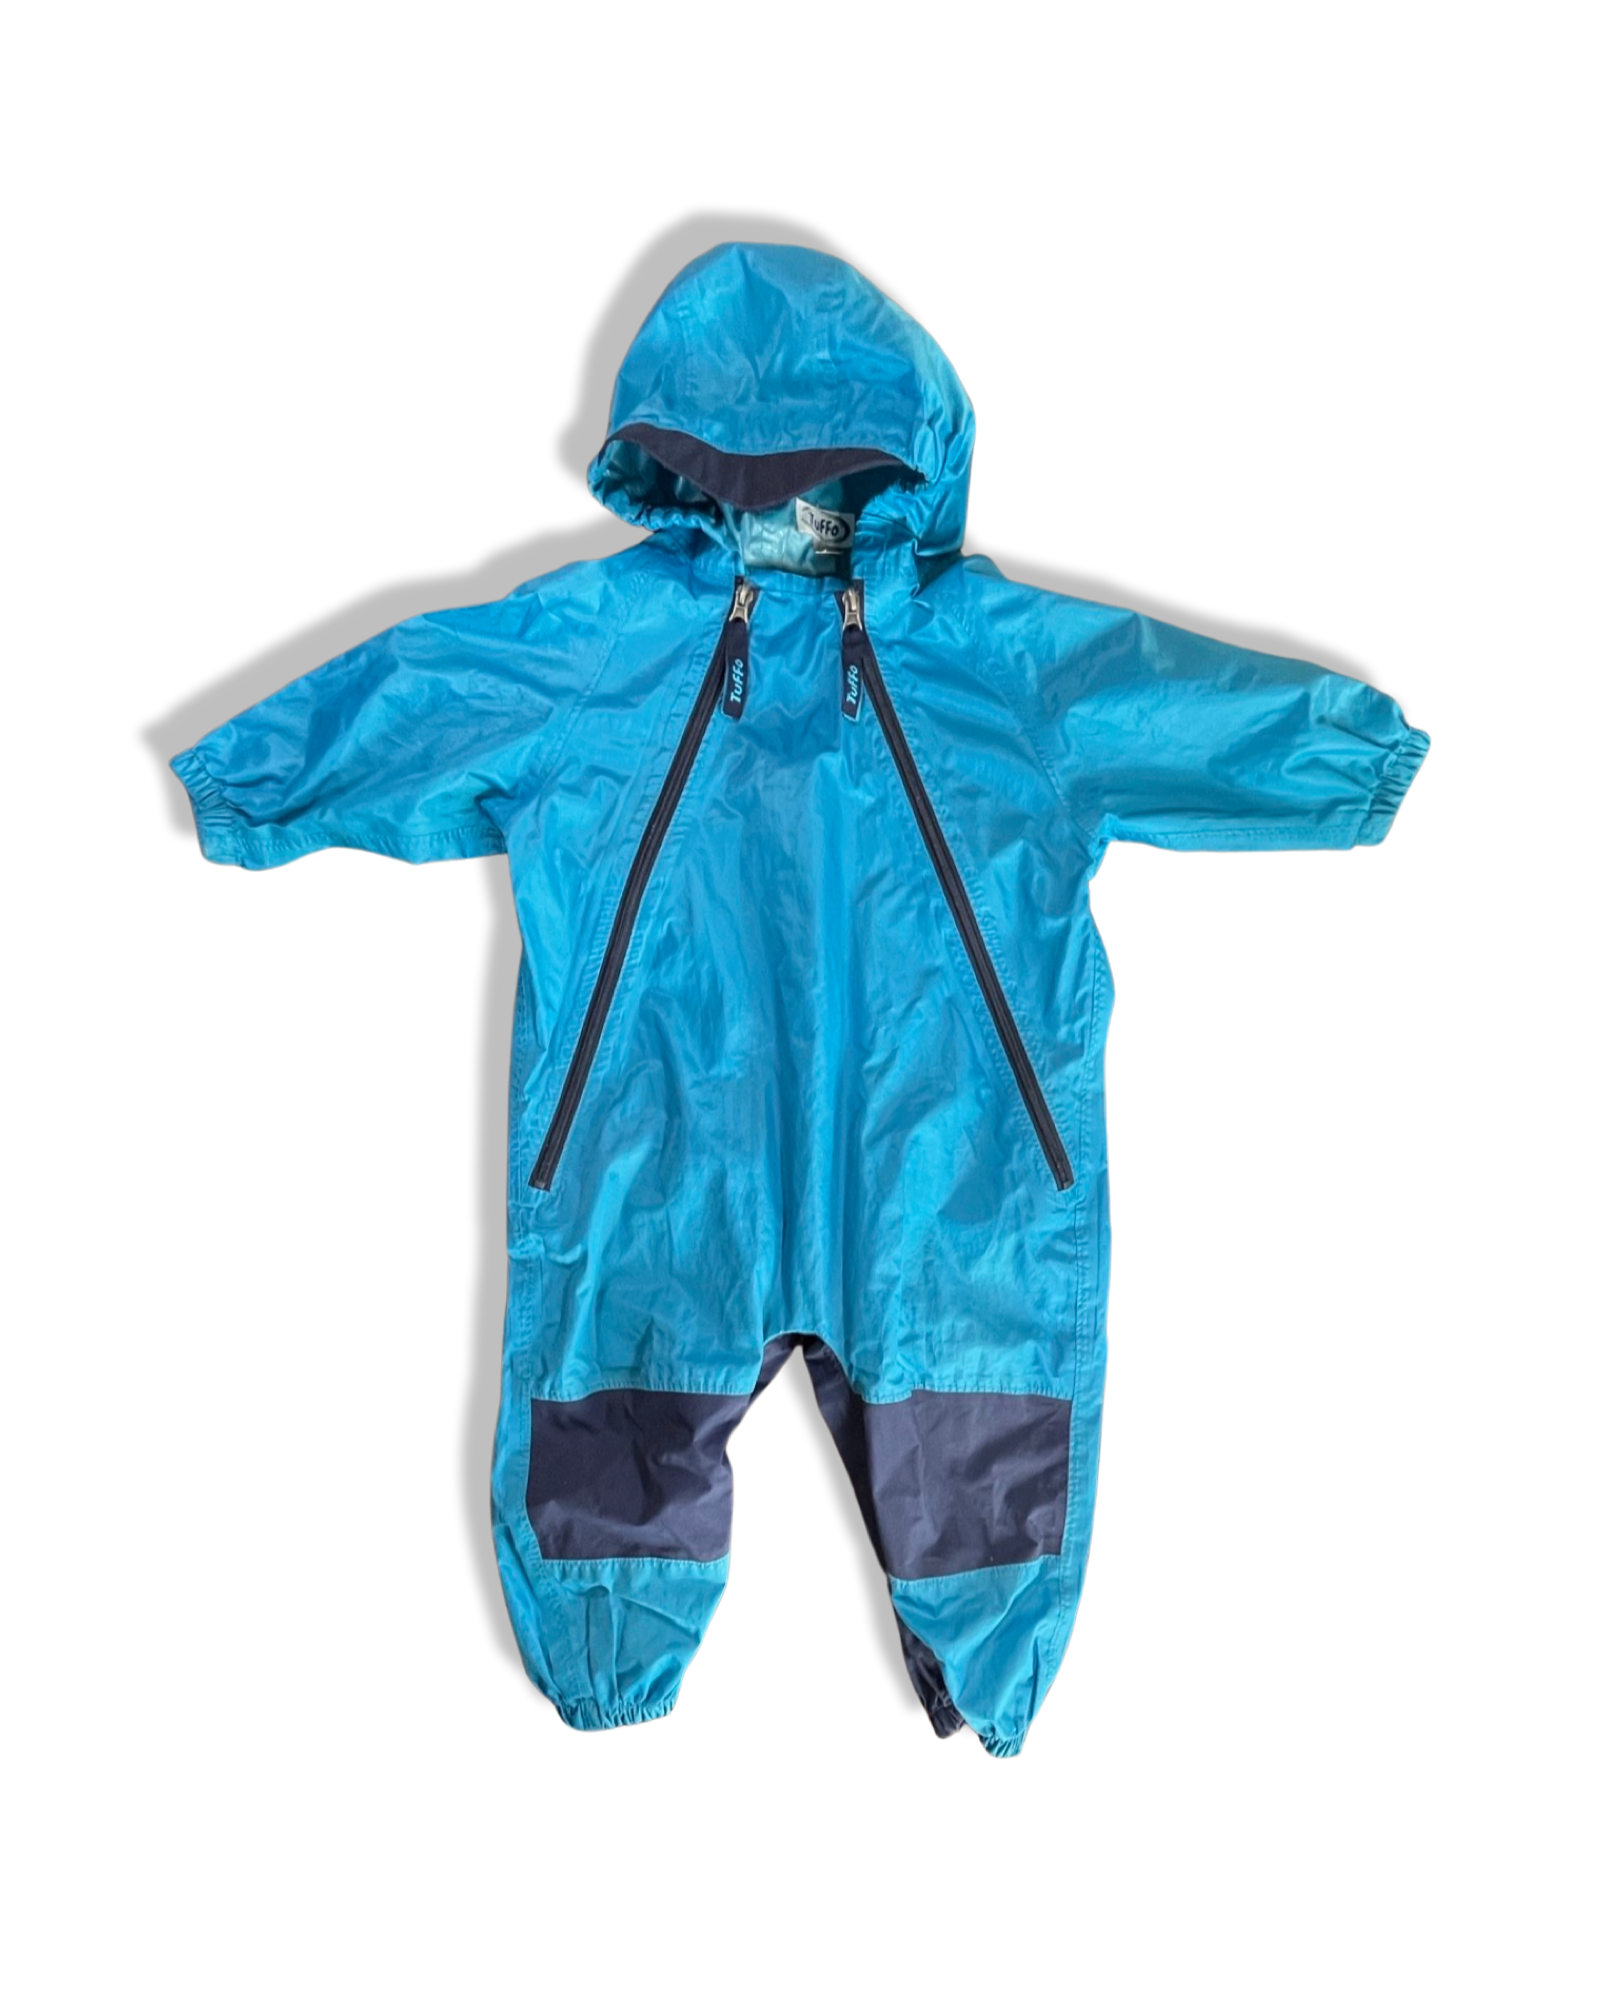 Tuffo Blus Waterproof Rainsuit Blue (2T)